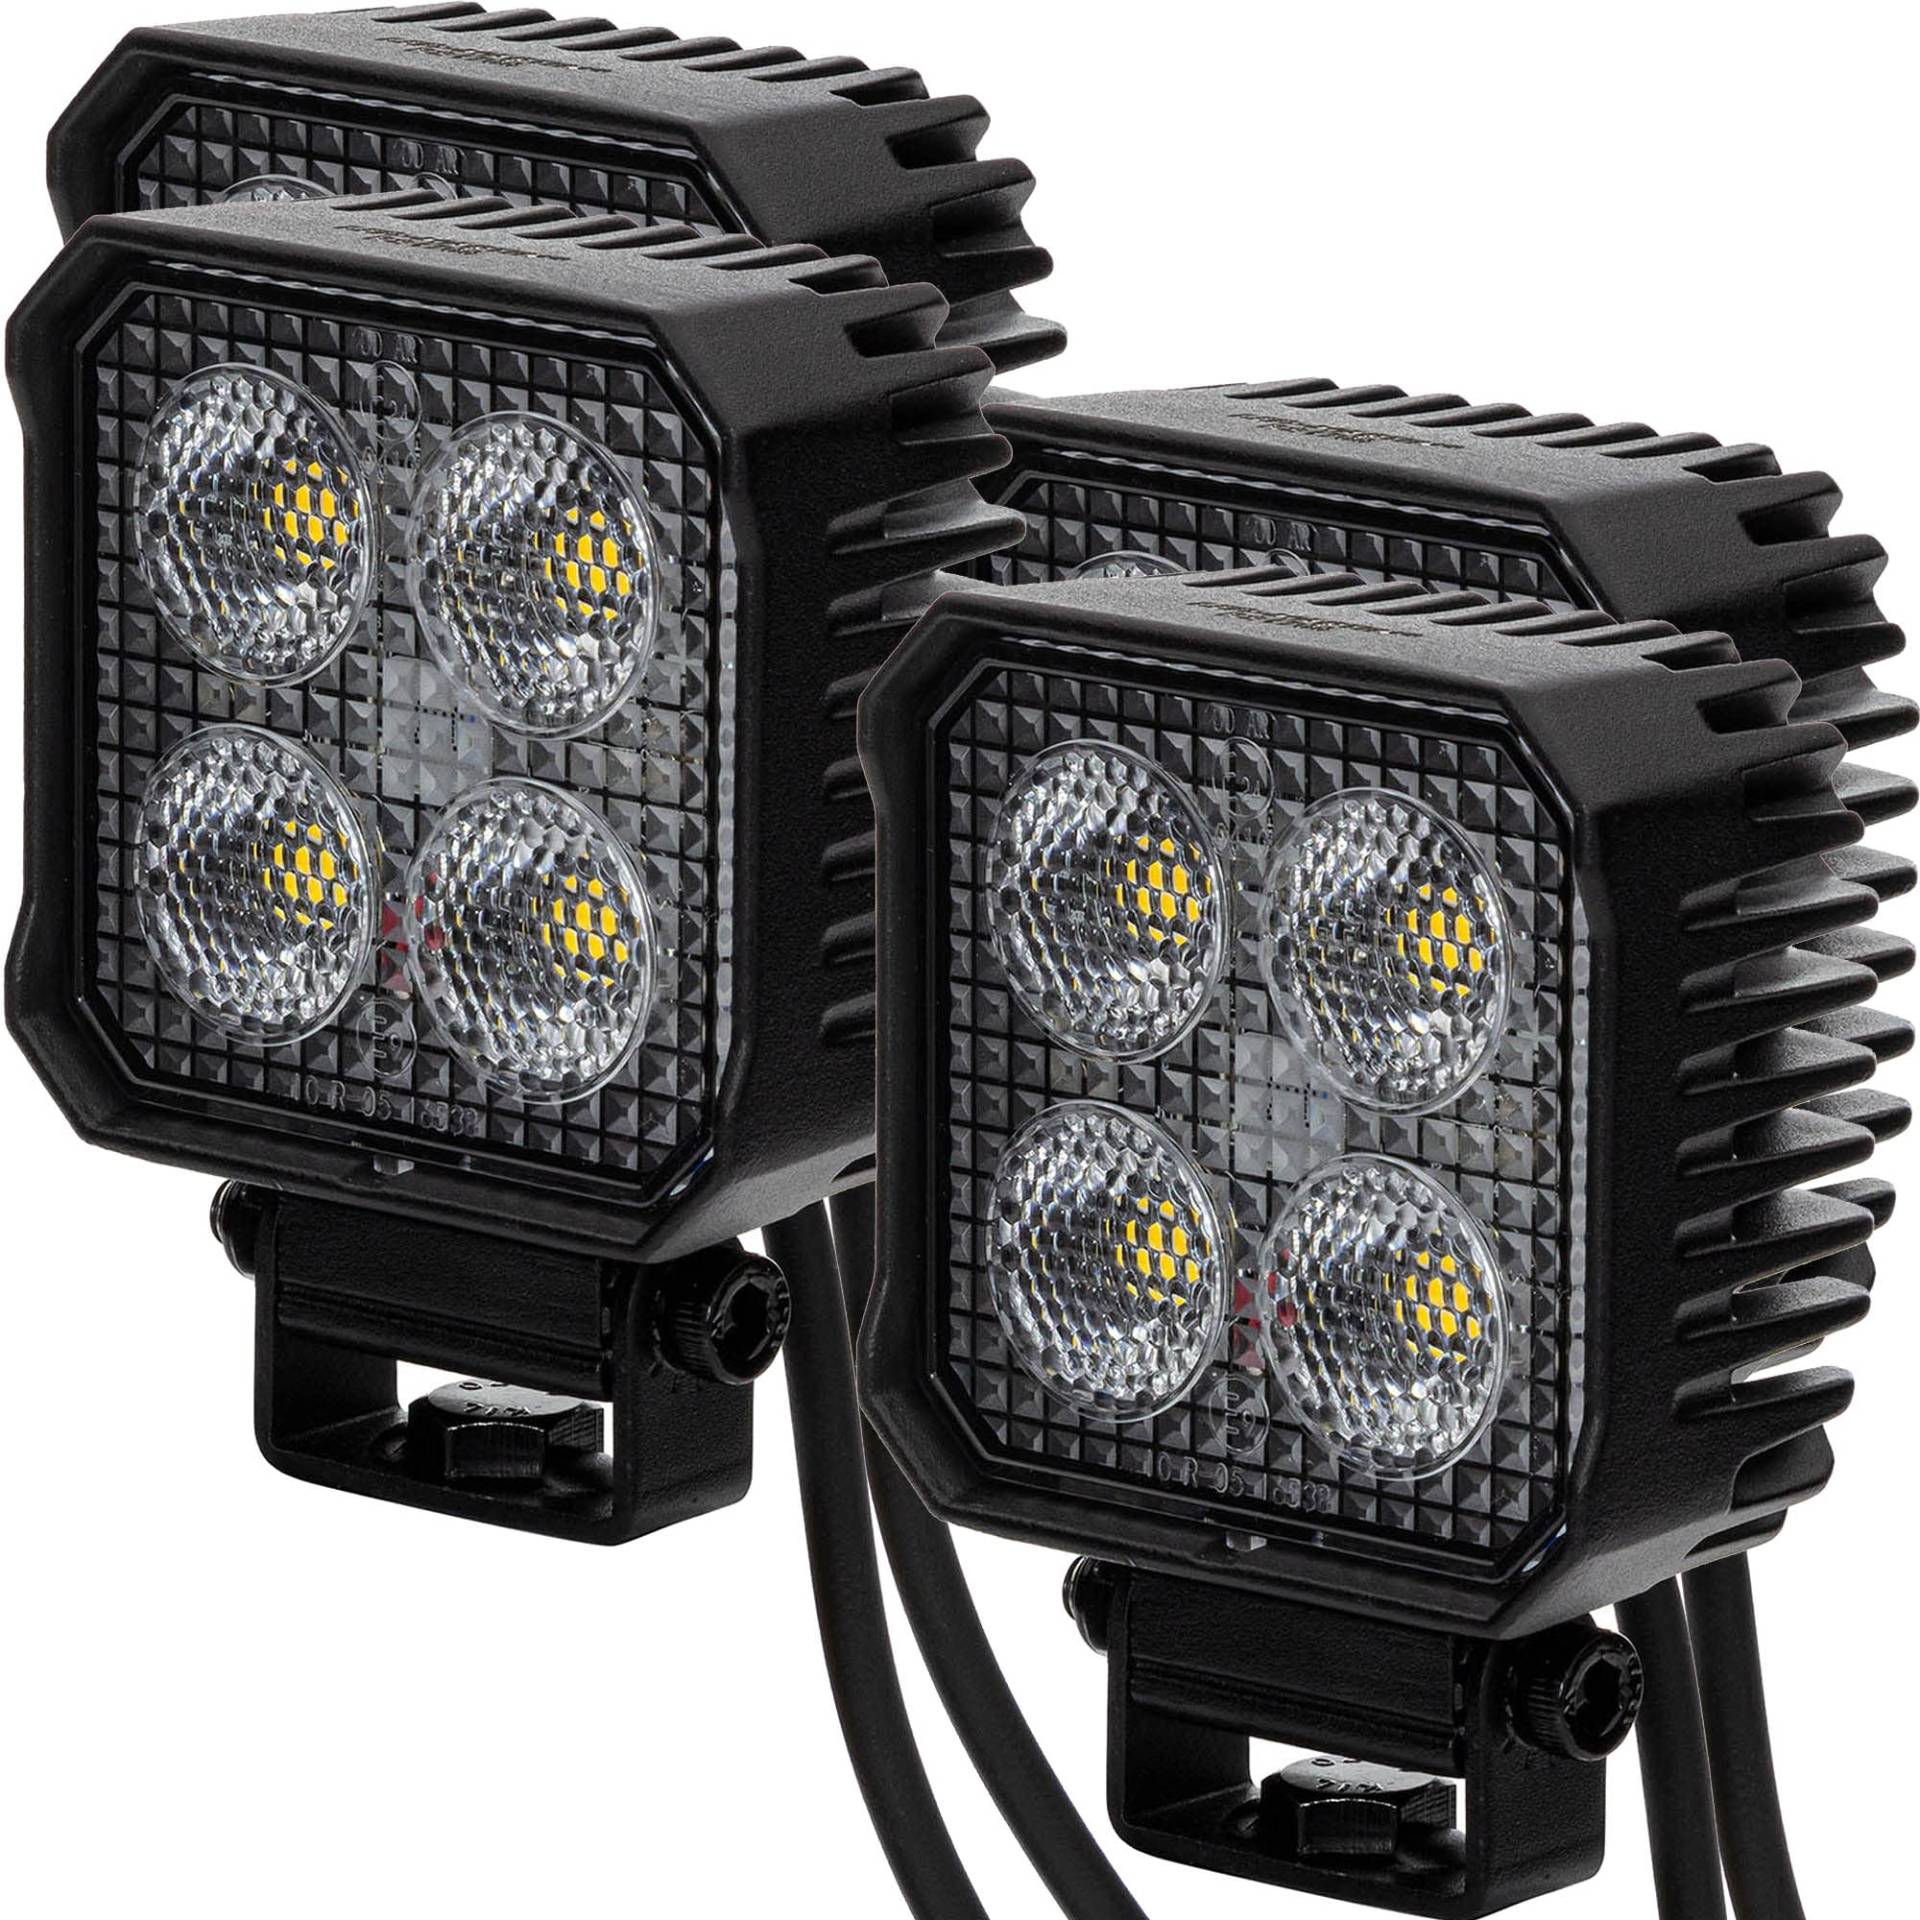 LED-MARTIN® RS1700 - LED-Rückfahrscheinwerfer/Arbeitsscheinwerfer - 1700lm - eckig - 12V/24V - ECE-R23 Typenprüfung - 100% zulässig - für alle Typen - schwarz von LED-MARTIN